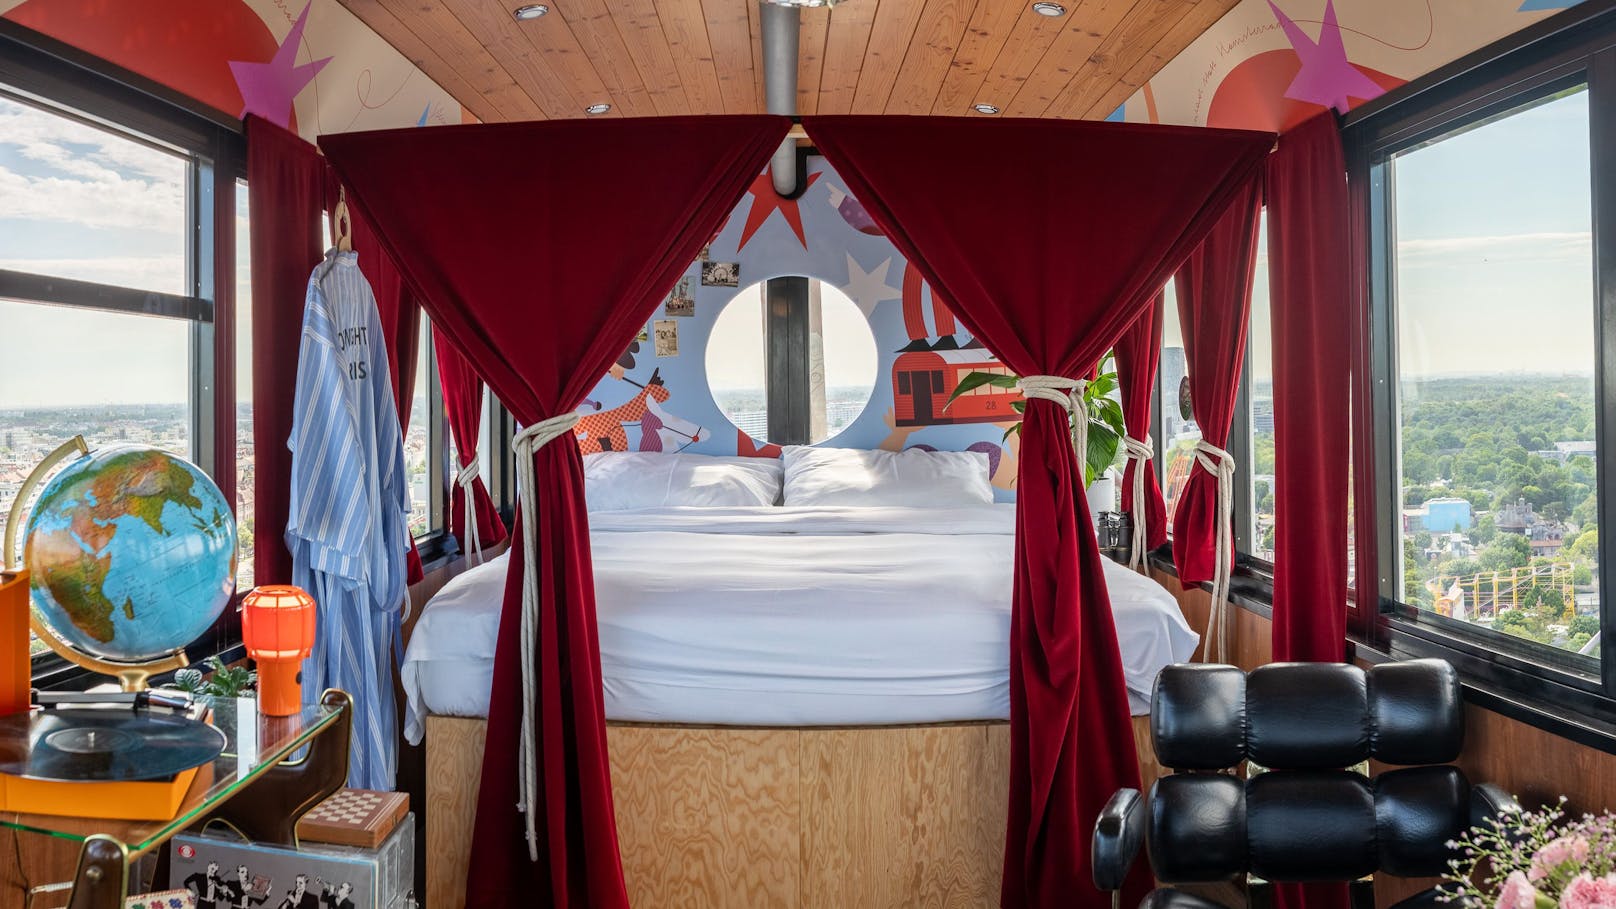 Das Hotel Superbude verlost eine Nacht im "Room with a View" im Wiener Riesenrad.